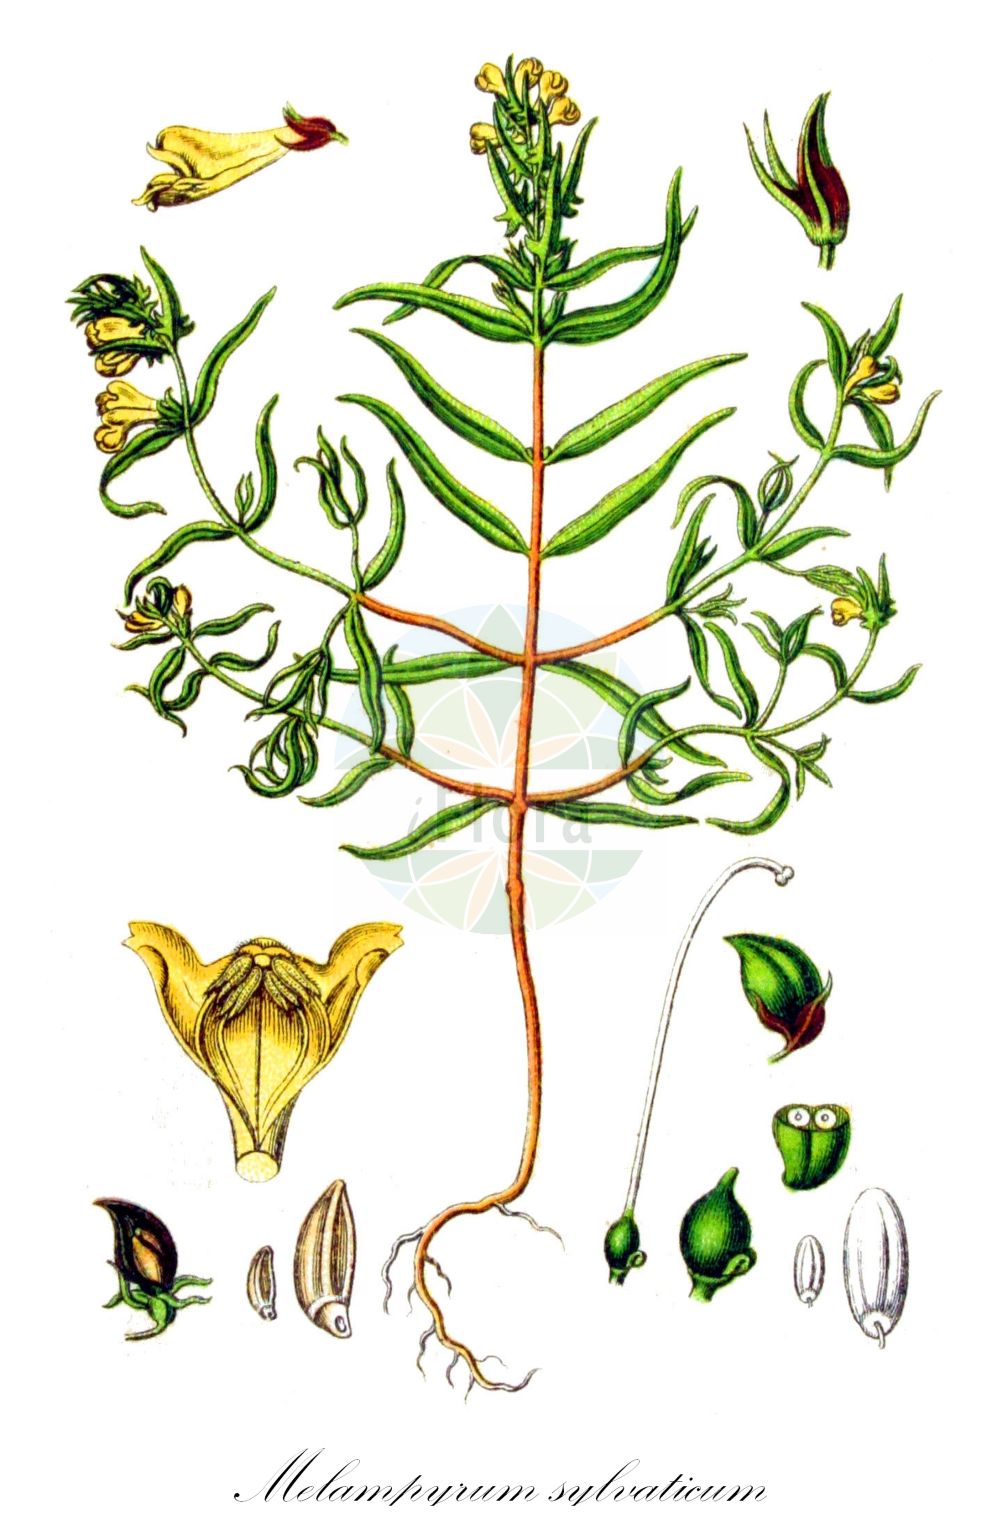 Historische Abbildung von Melampyrum sylvaticum (Wald-Wachtelweizen - Small Cow-wheat). Das Bild zeigt Blatt, Bluete, Frucht und Same. ---- Historical Drawing of Melampyrum sylvaticum (Wald-Wachtelweizen - Small Cow-wheat). The image is showing leaf, flower, fruit and seed.(Melampyrum sylvaticum,Wald-Wachtelweizen,Small Cow-wheat,Melampyrum aestivale,Melampyrum carpaticum,Melampyrum intermedium,Melampyrum laricetorum,Melampyrum subsylvaticum,Melampyrum sylvaticum,Melampyrum sylvaticum L. subsp.,Melampyrum transsilvanicum,Wald-Wachtelweizen,Berg-Wachtelweizen,Gewoehnlicher Wald-Wachtelweizen,Karpaten-Waldwachtelweizen,Mittlerer Wald-Wachtelweizen,Sommer-Waldwachtelweizen,Small Cow-wheat,Wood Cow-wheat,Melampyrum,Wachtelweizen,Cowwheat,Orobanchaceae,Sommerwurzgewächse,Broomrape family,Blatt,Bluete,Frucht,Same,leaf,flower,fruit,seed,Sturm (1796f))